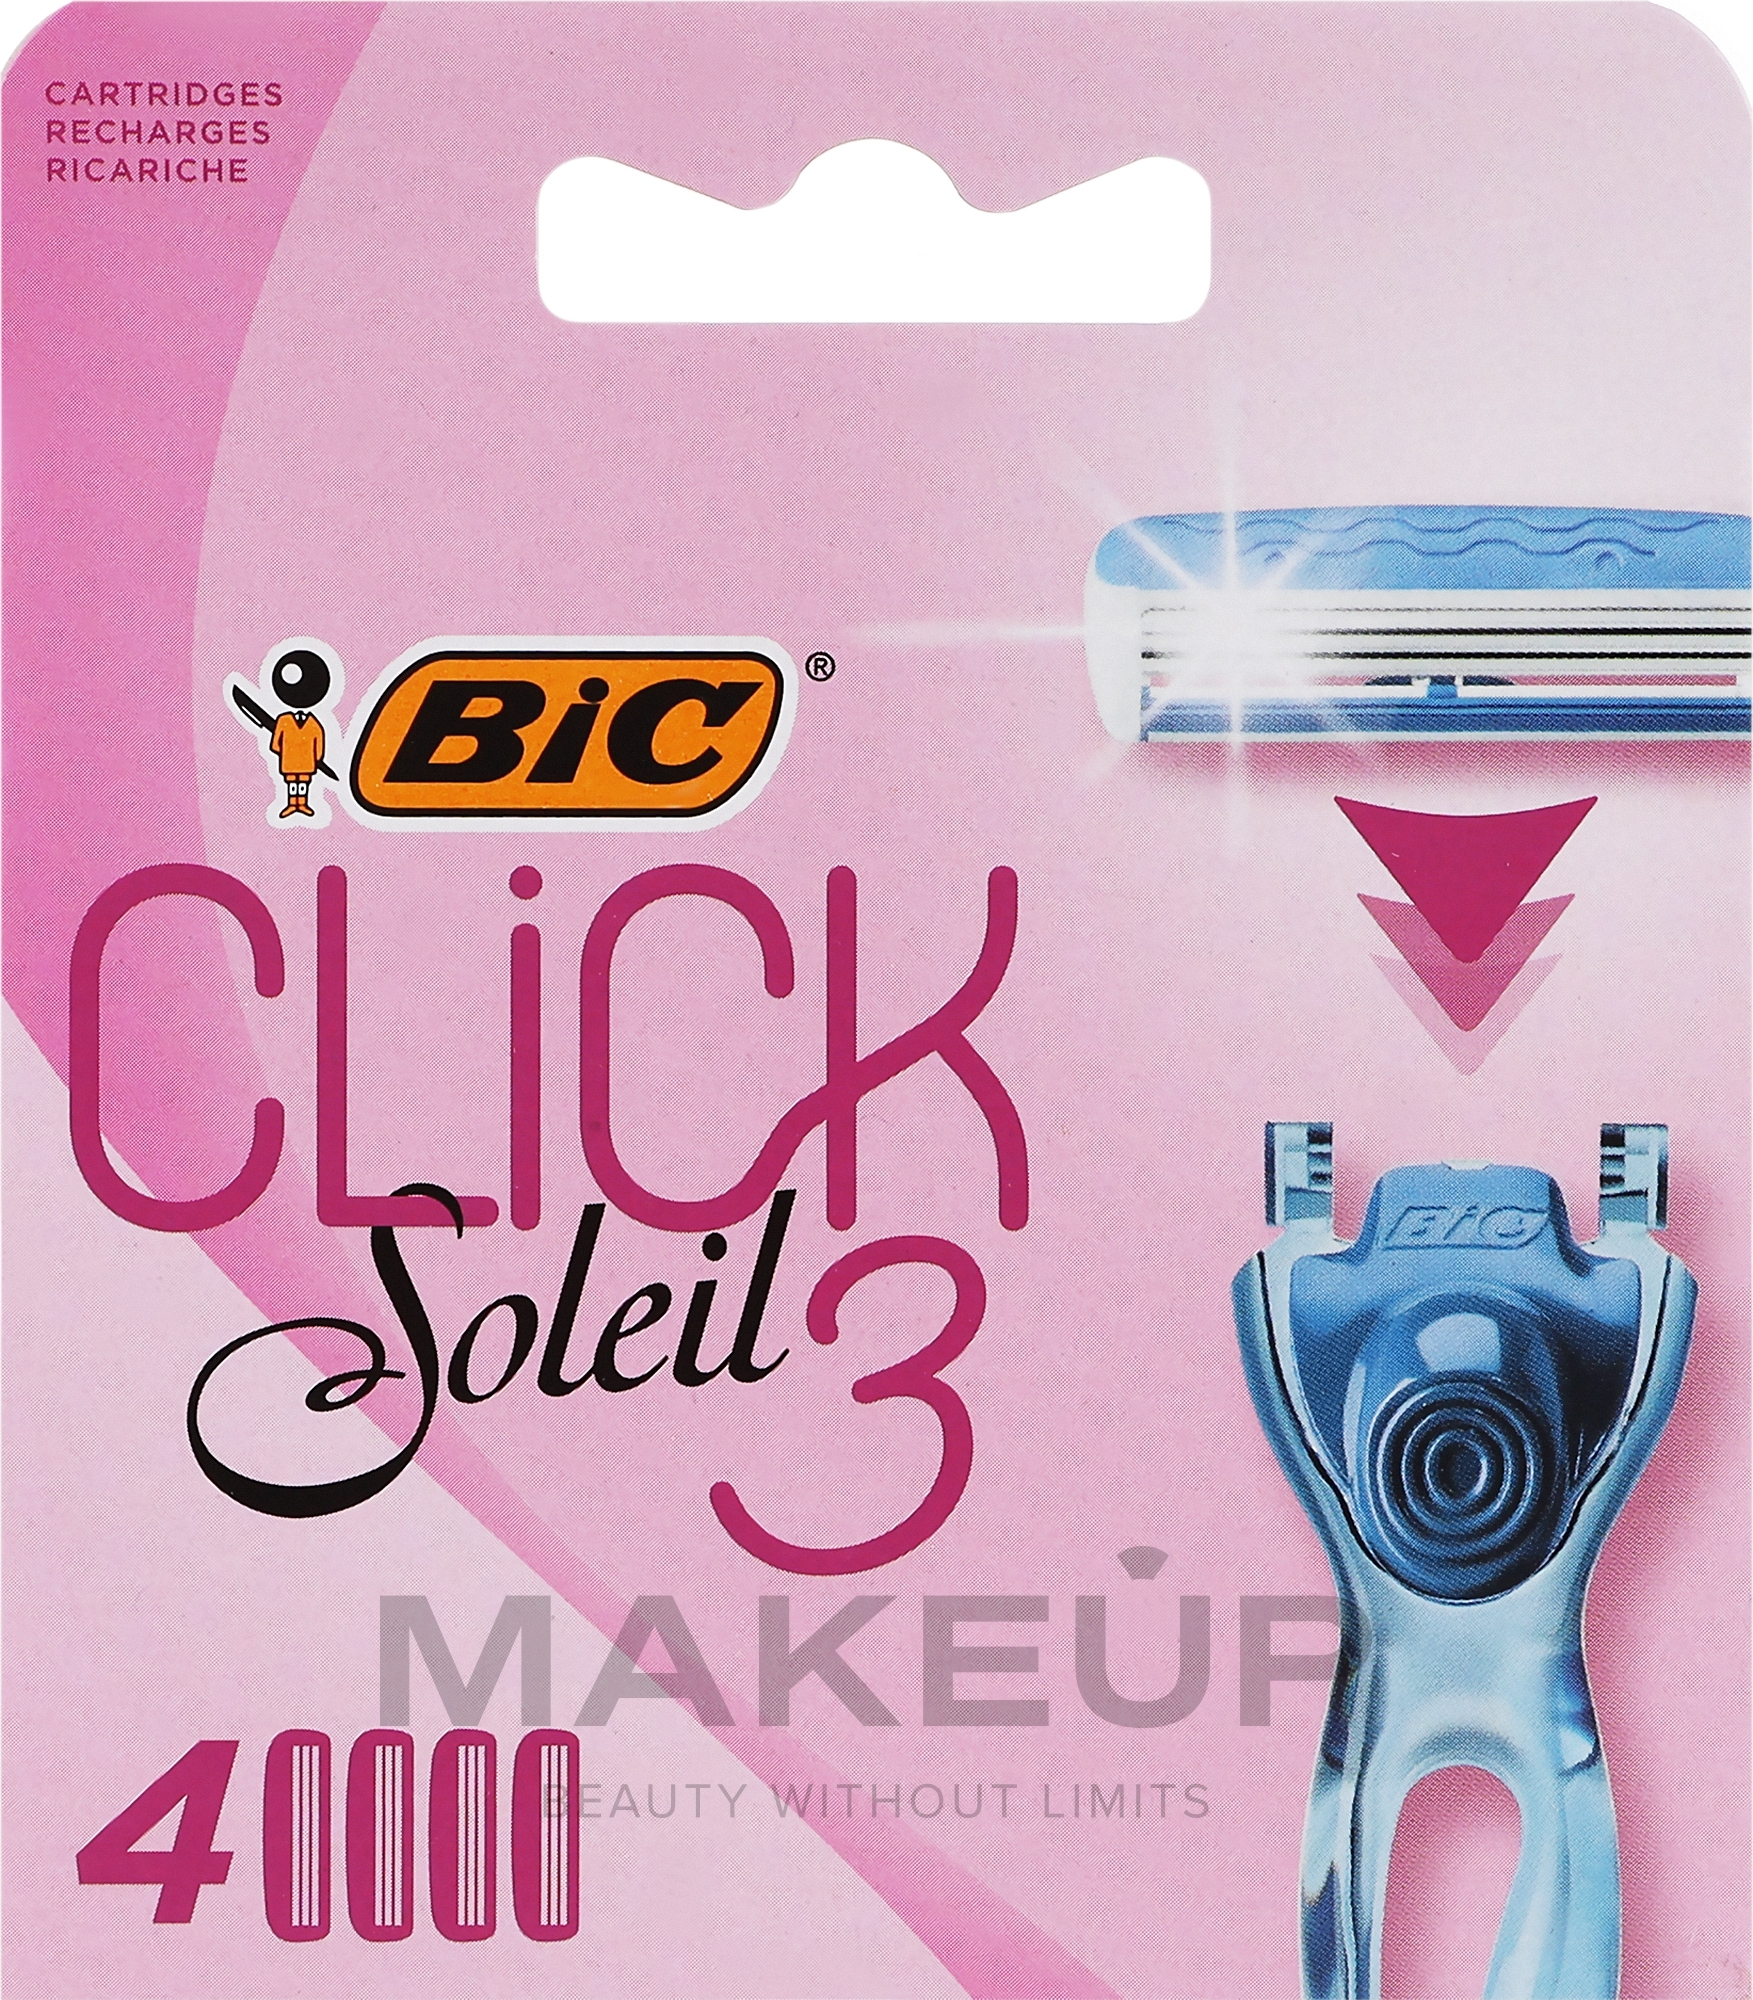 Сменные кассеты для бритья, 4 шт. - Bic Click 3 Soleil — фото 4шт